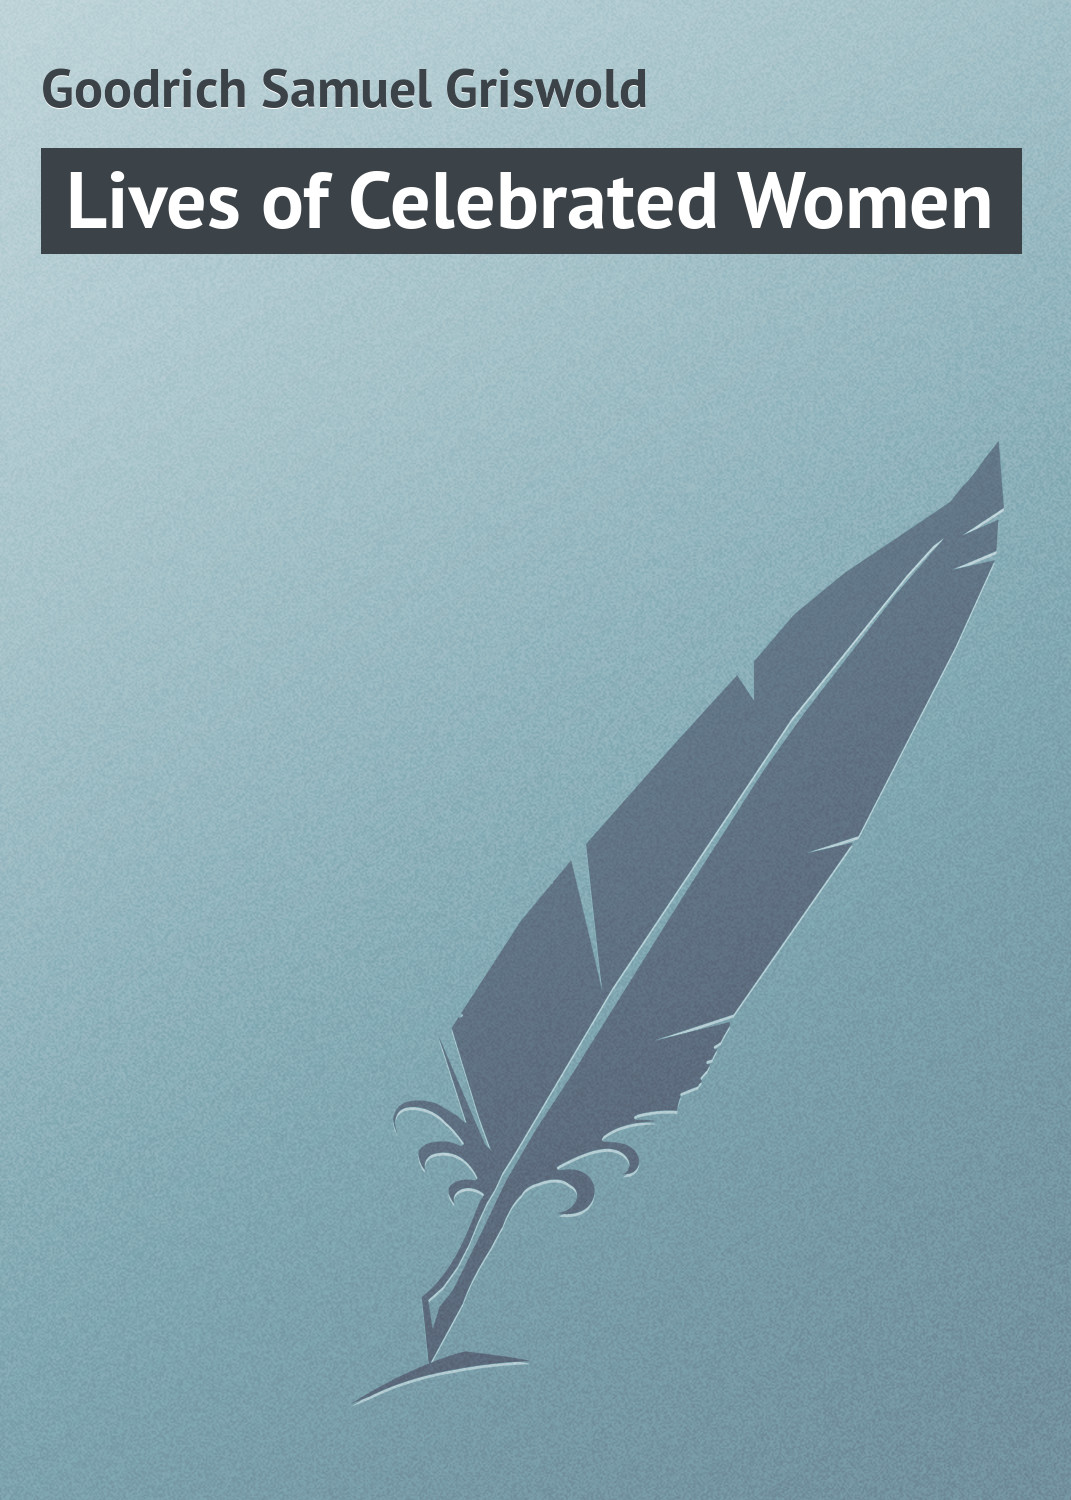 Книга Lives of Celebrated Women из серии , созданная Samuel Goodrich, может относится к жанру Зарубежная классика. Стоимость электронной книги Lives of Celebrated Women с идентификатором 23154475 составляет 5.99 руб.